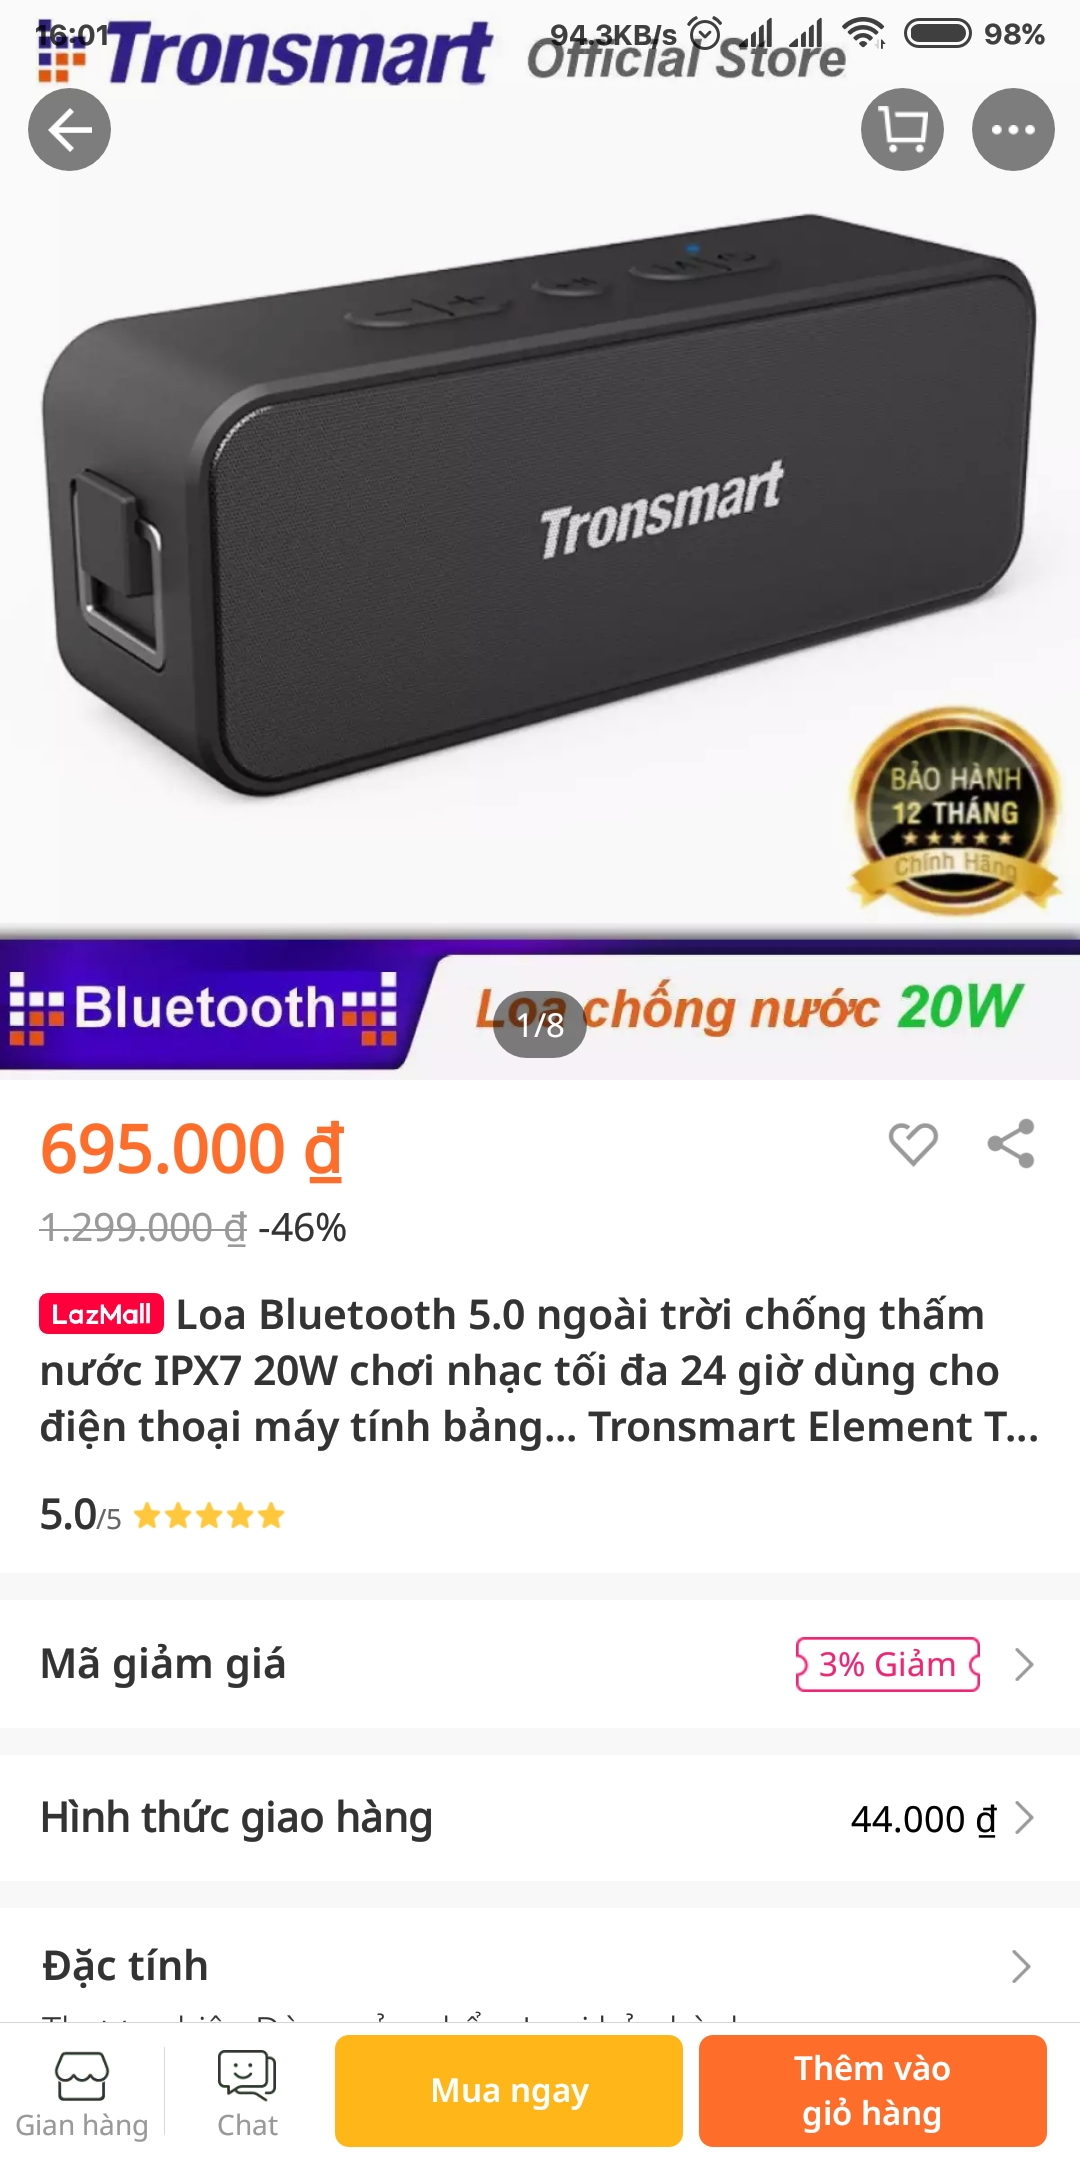 Chào các bác, kinh tế của em hiện giờ có 500k (+/- 100k) thì nên mua loa Bluetooth nào ổn nhất tầm